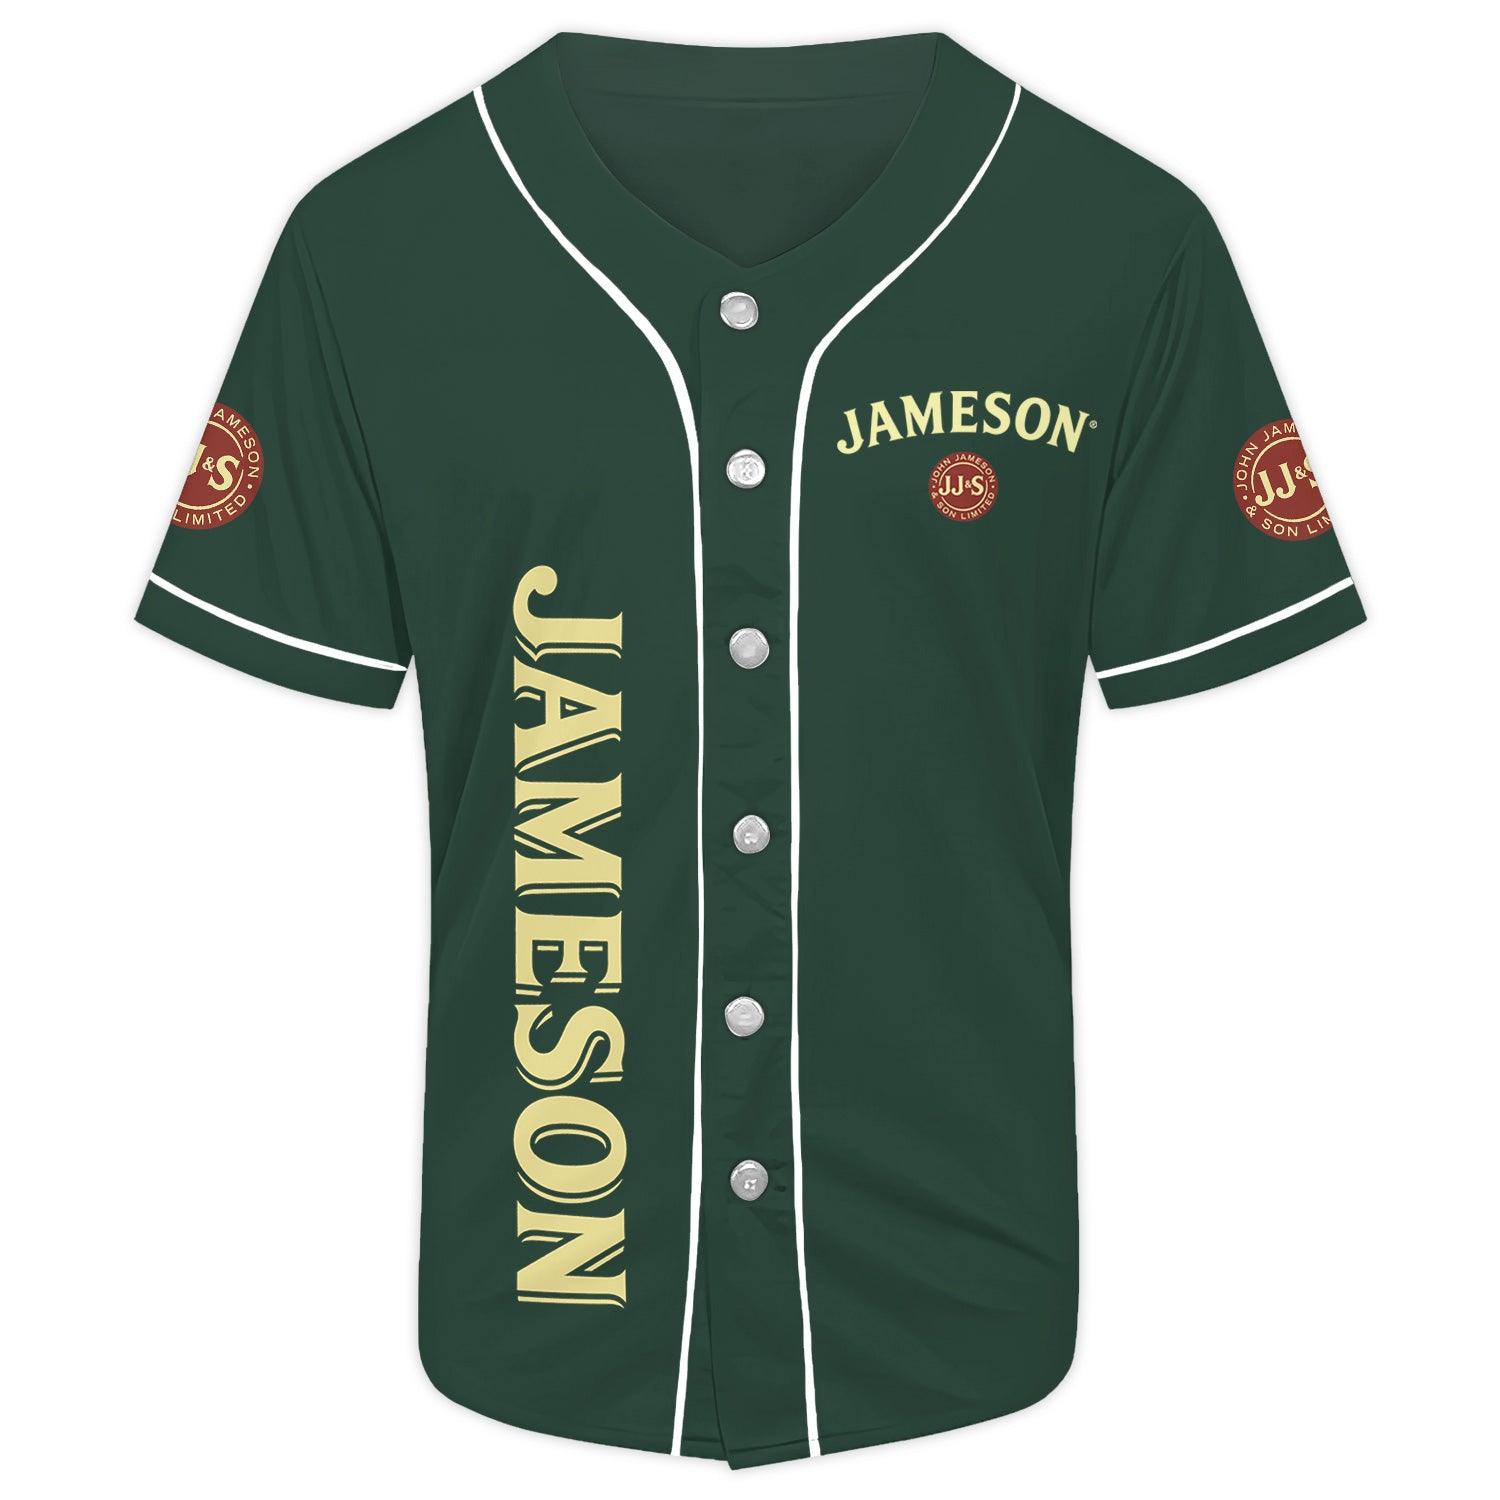 Personalized Green Jameson Whiskey Baseball Jersey